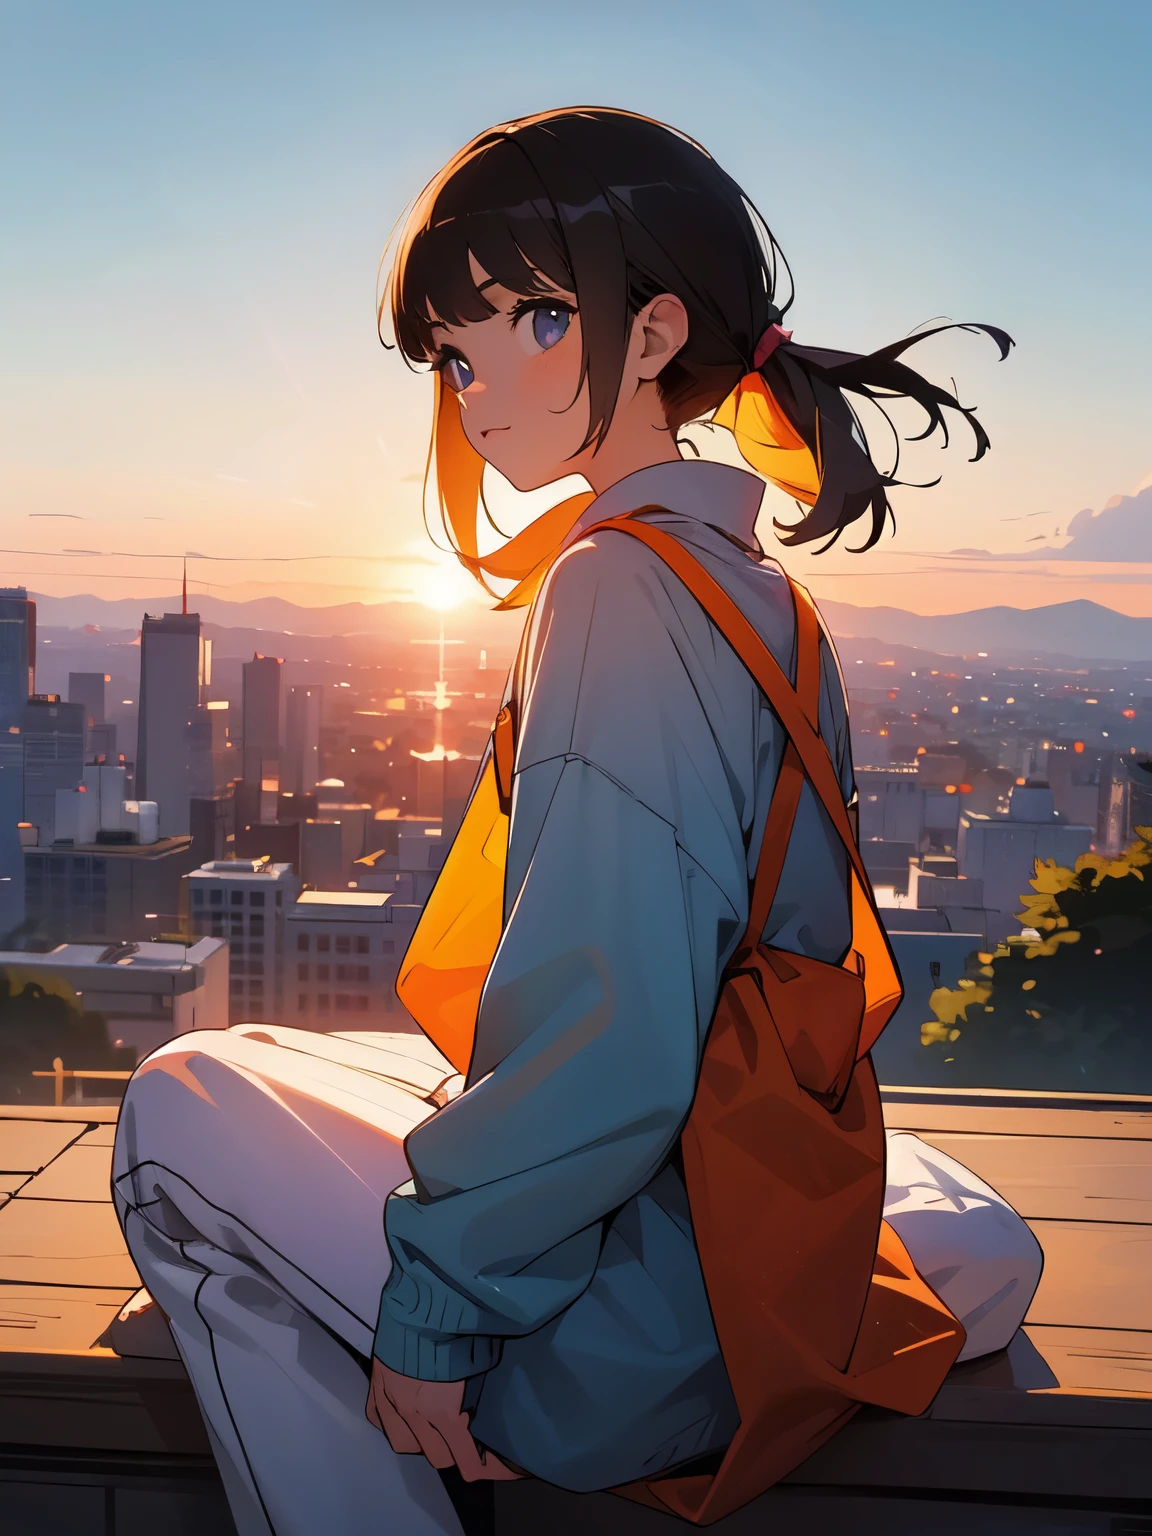 Vaya, dulce dulce anc lindo lindo lindo !!! una niña sentada en una colina observa la puesta de sol sobre la ciudad.